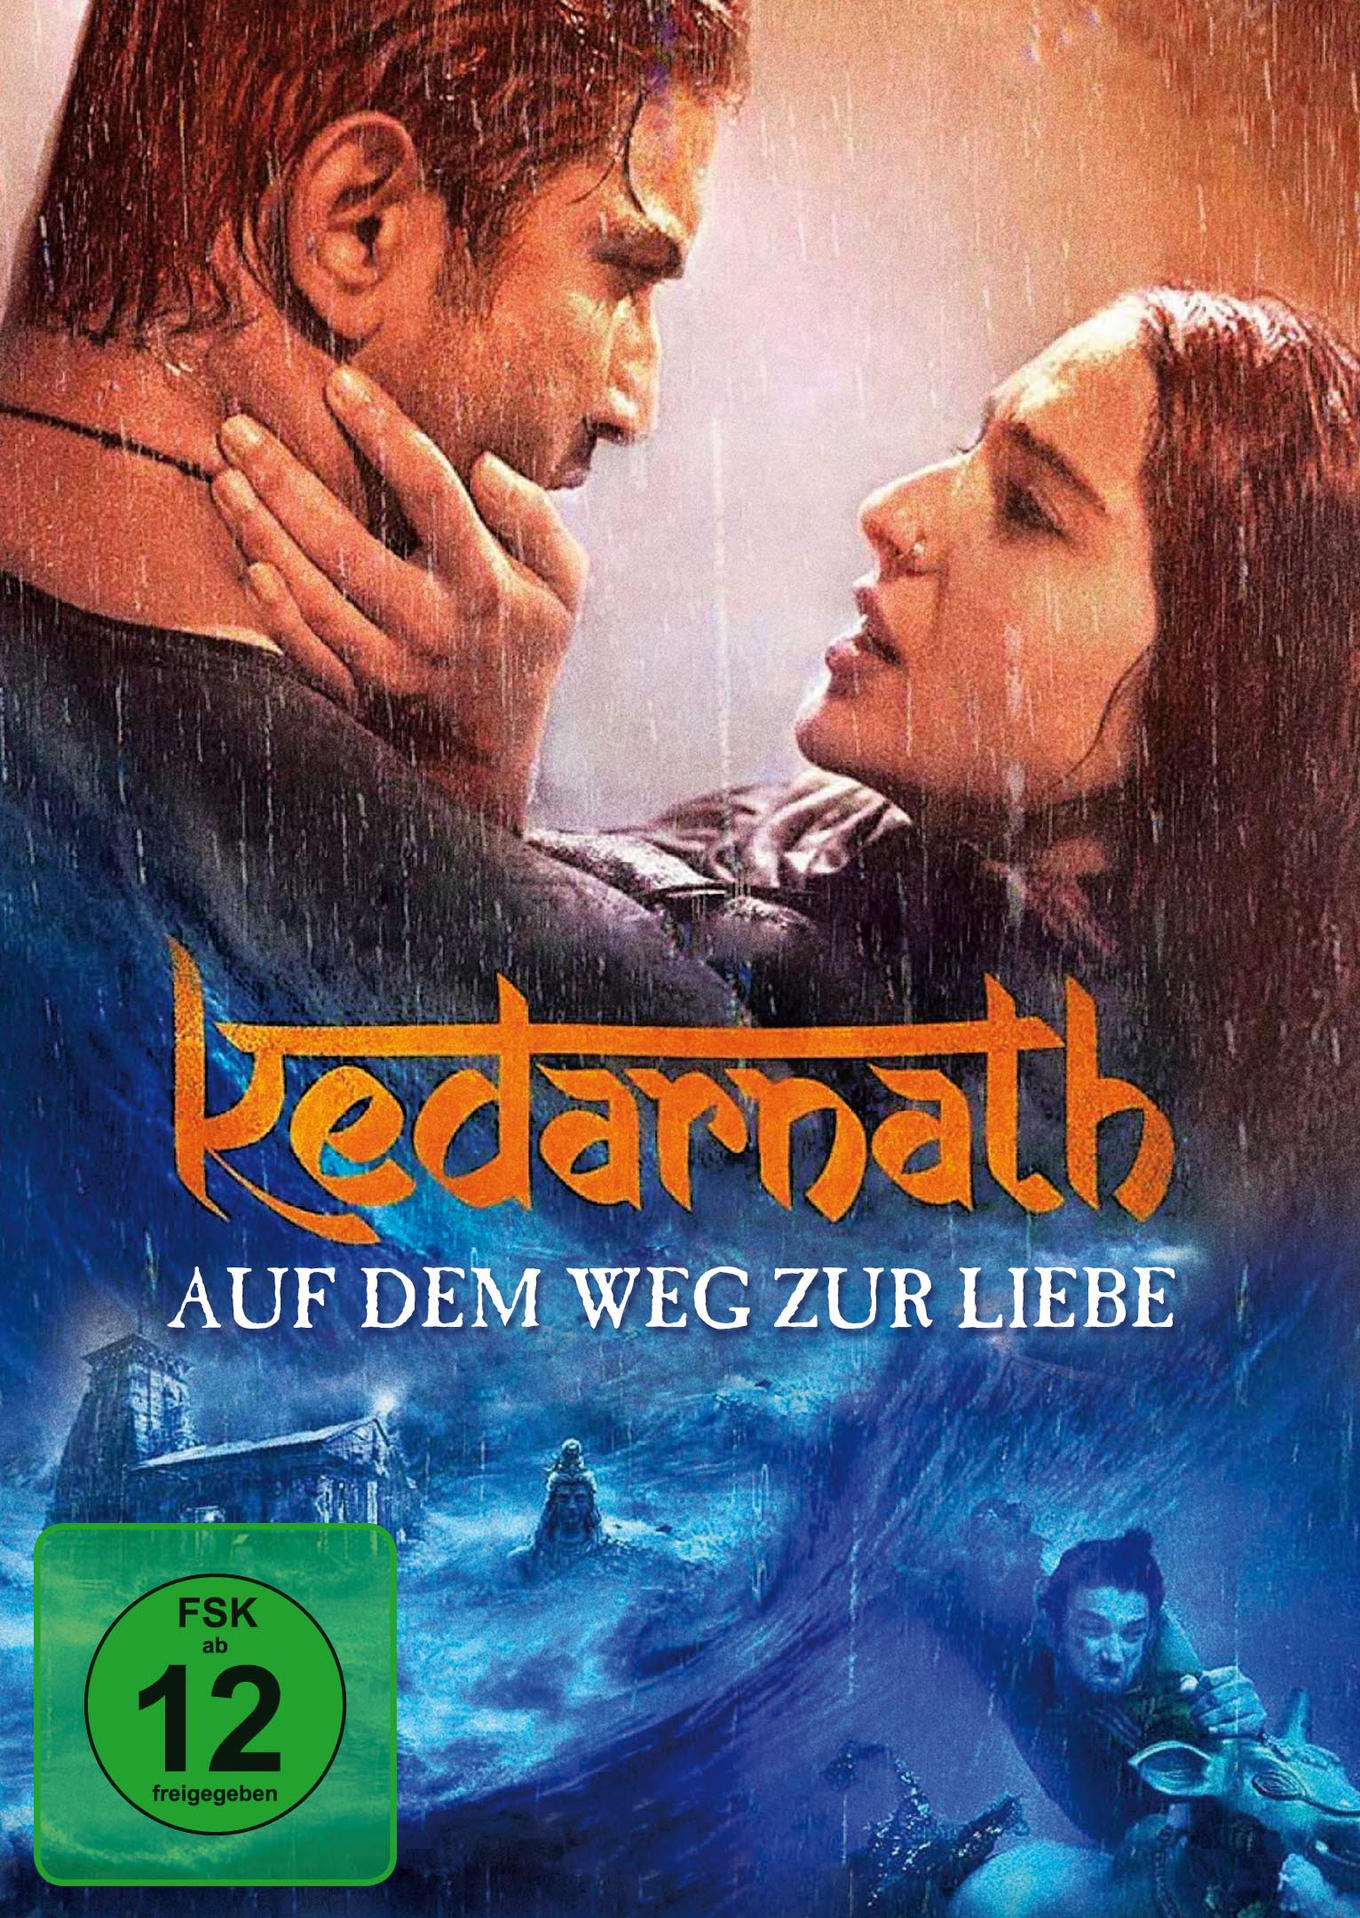 Kedarnath - Auf DVD Weg zur Liebe dem